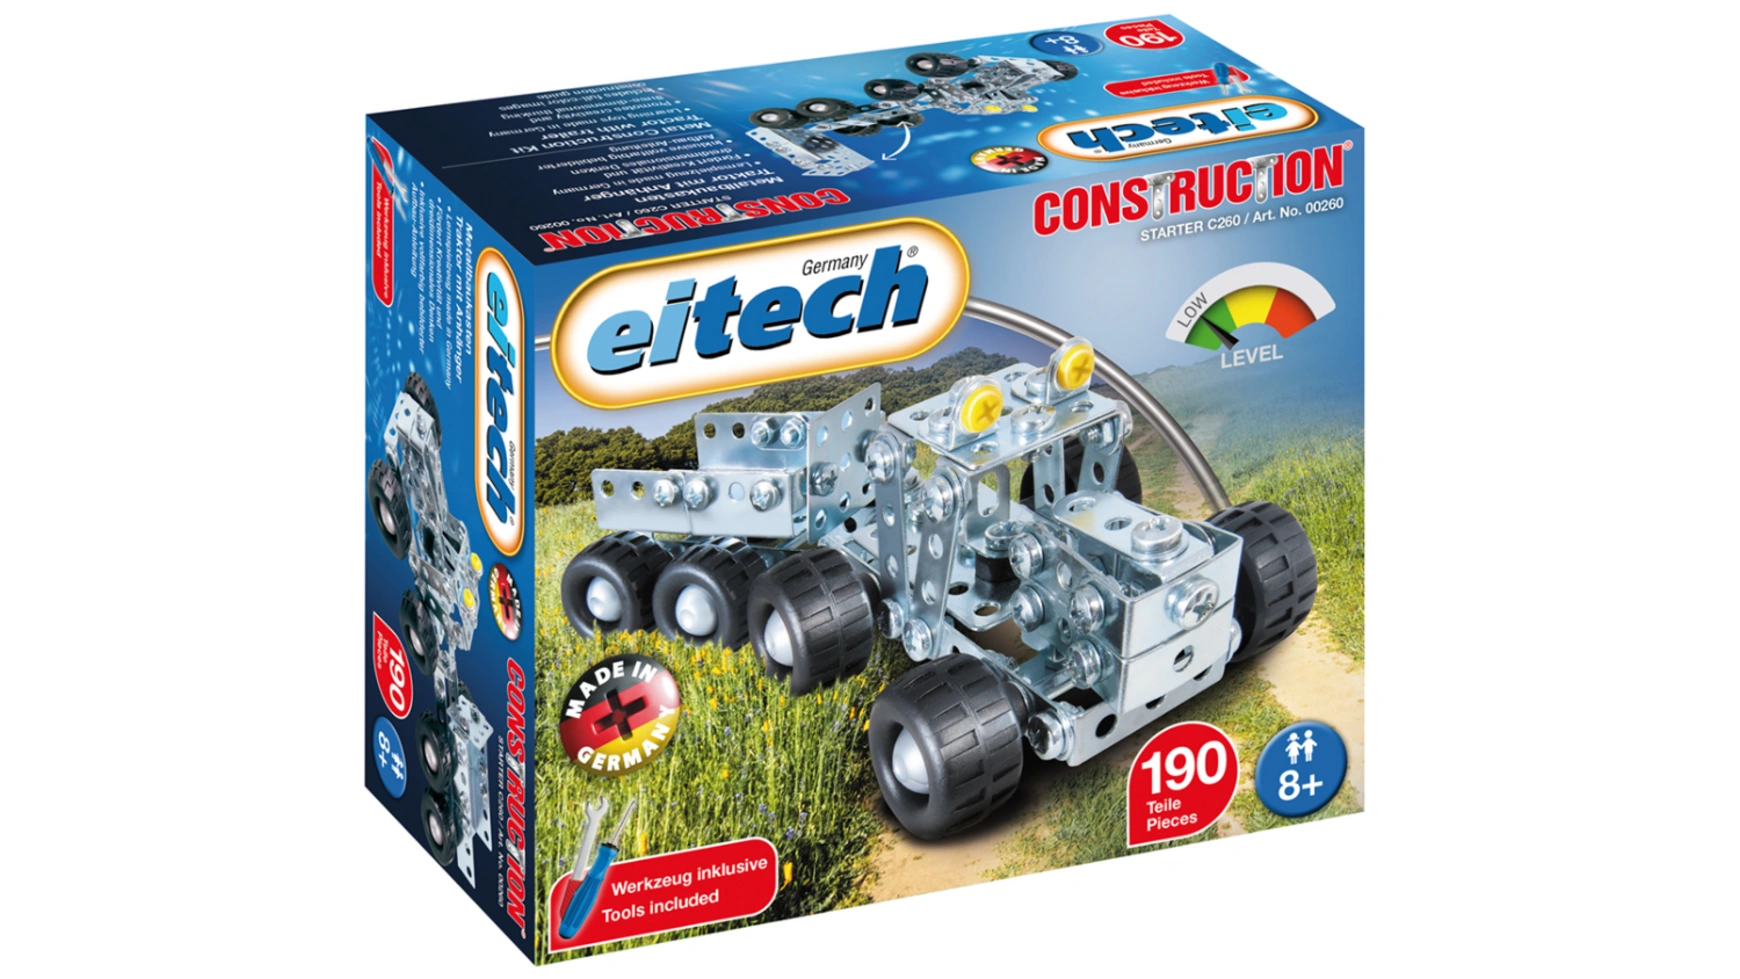 Eitech Металлический конструктор C260 небольшой трактор с прицепом цена и фото